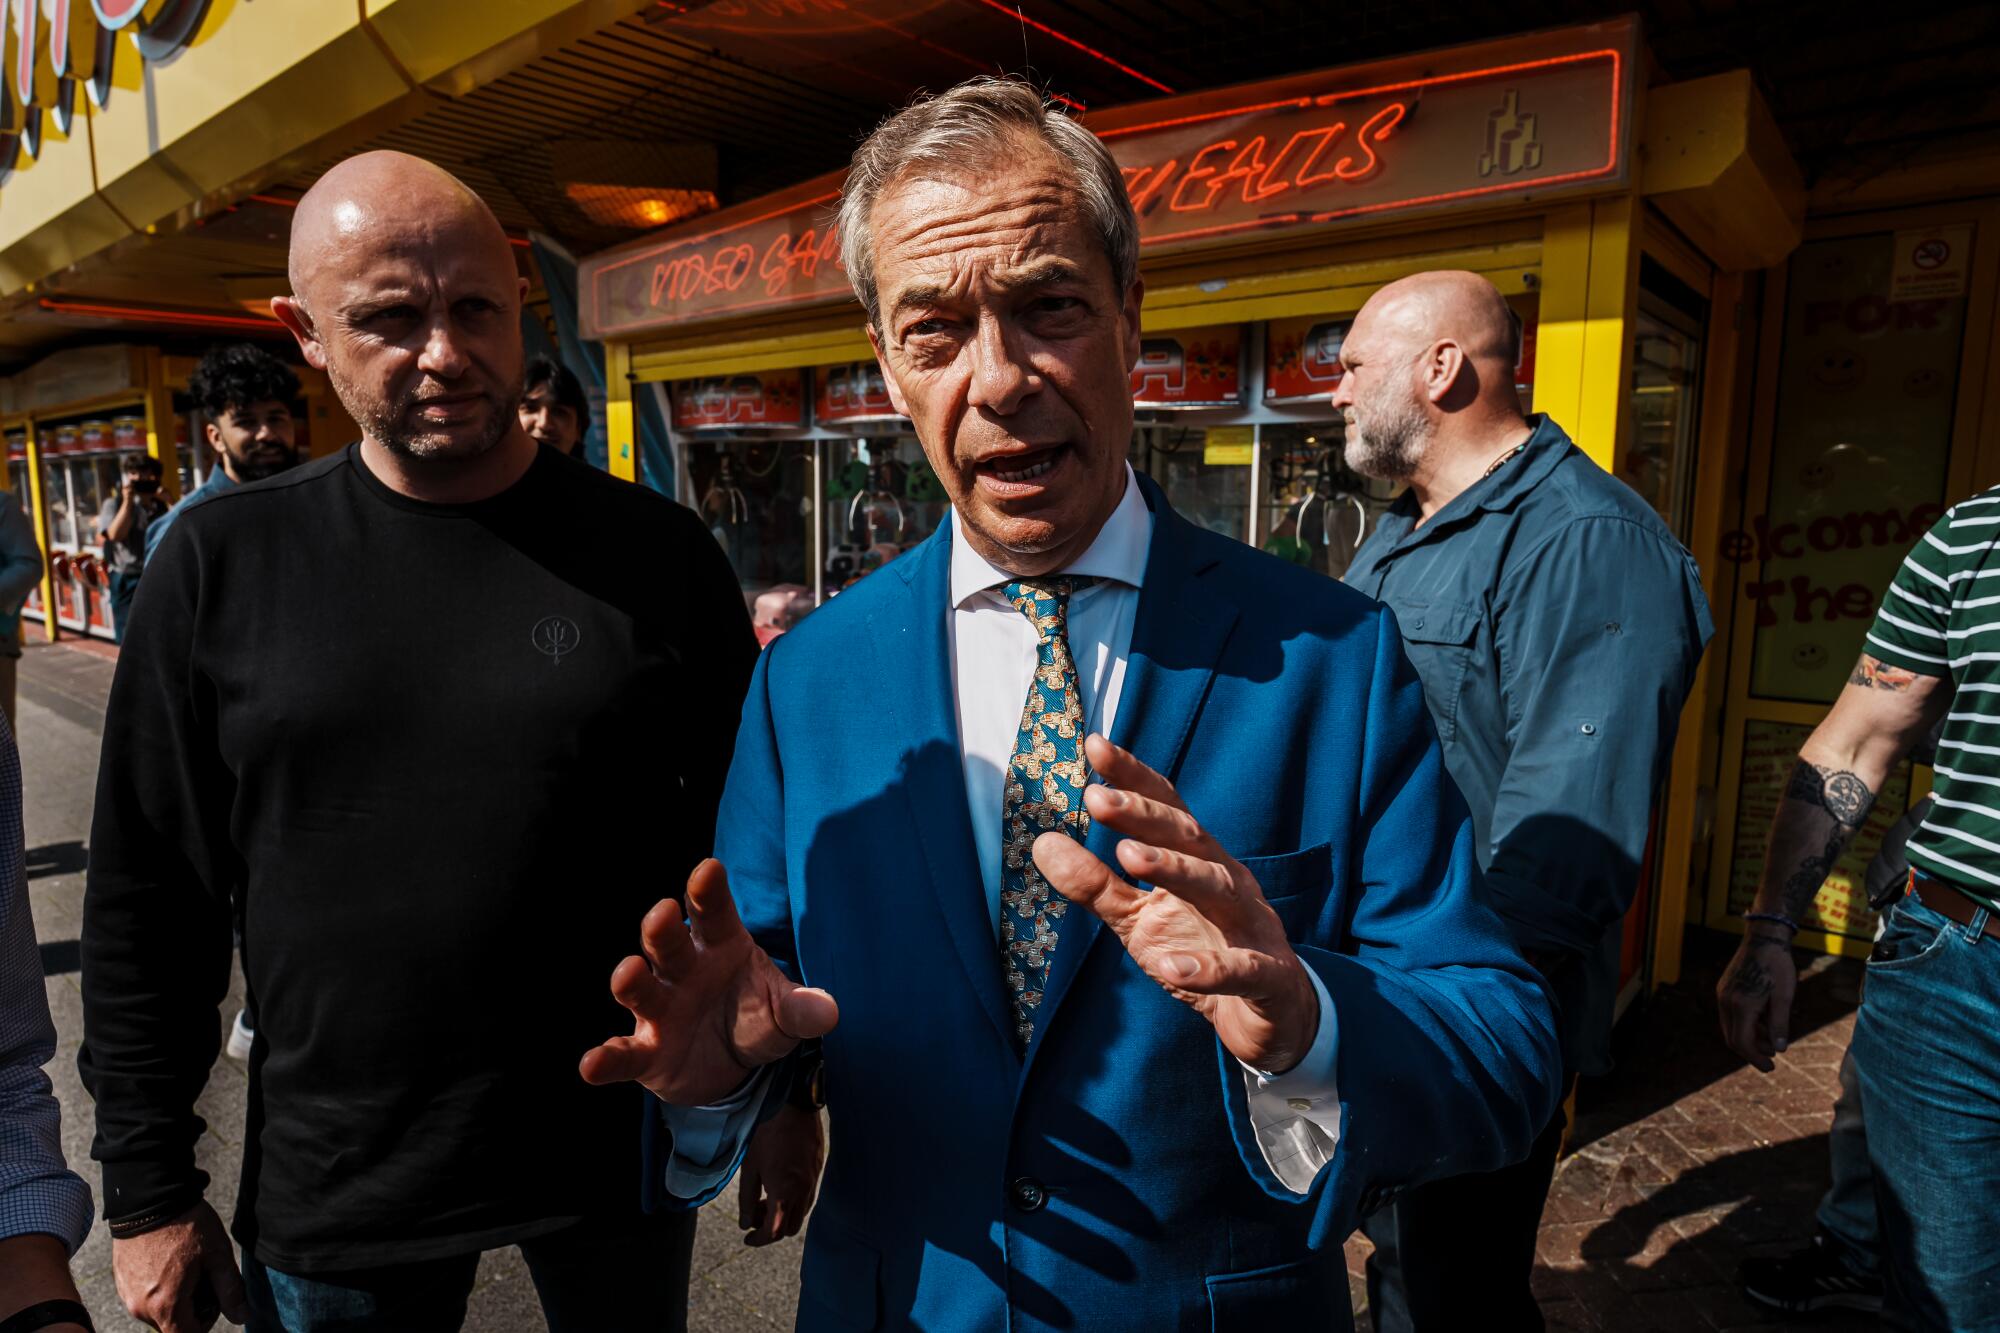 Nigel Farage gesticula em um terno azul brilhante.